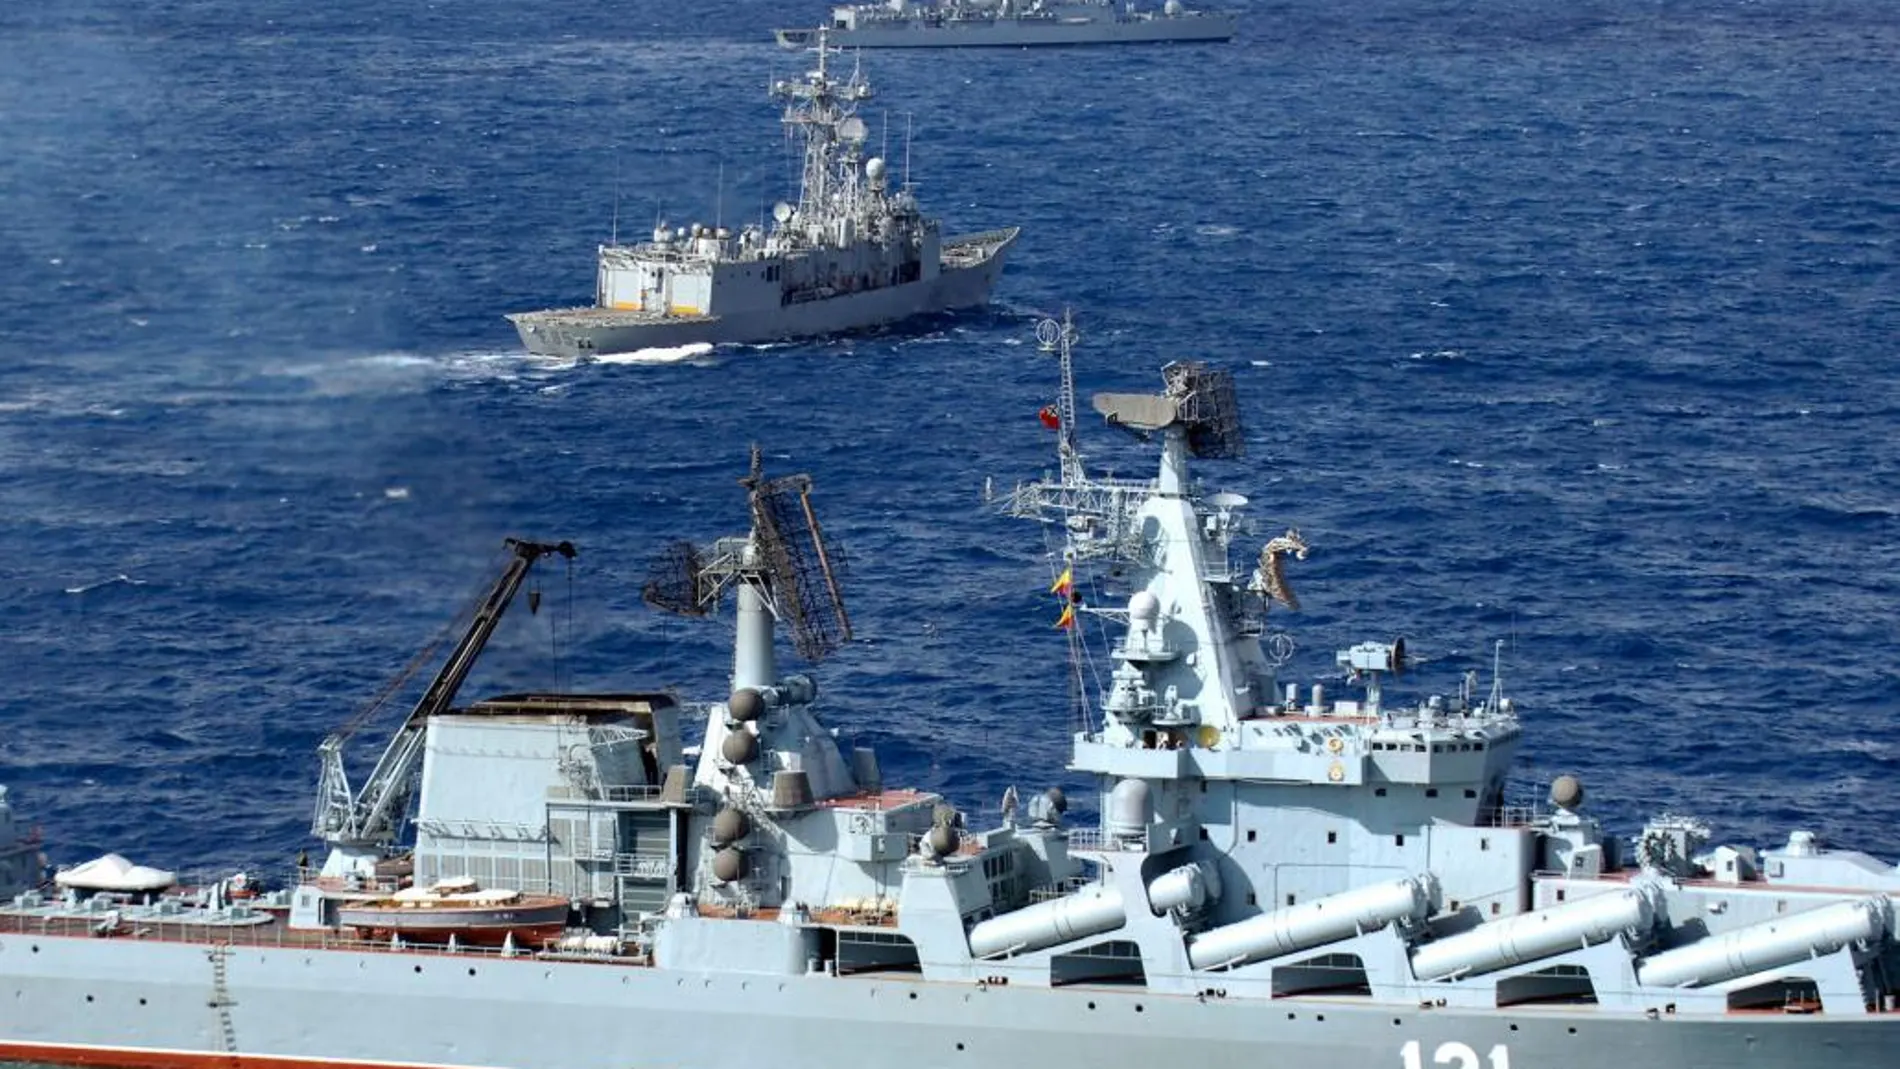 Imagen de archivo del desturctor ruso "Moskva"en unas maniobras conjuntas en el Mediterráneo.